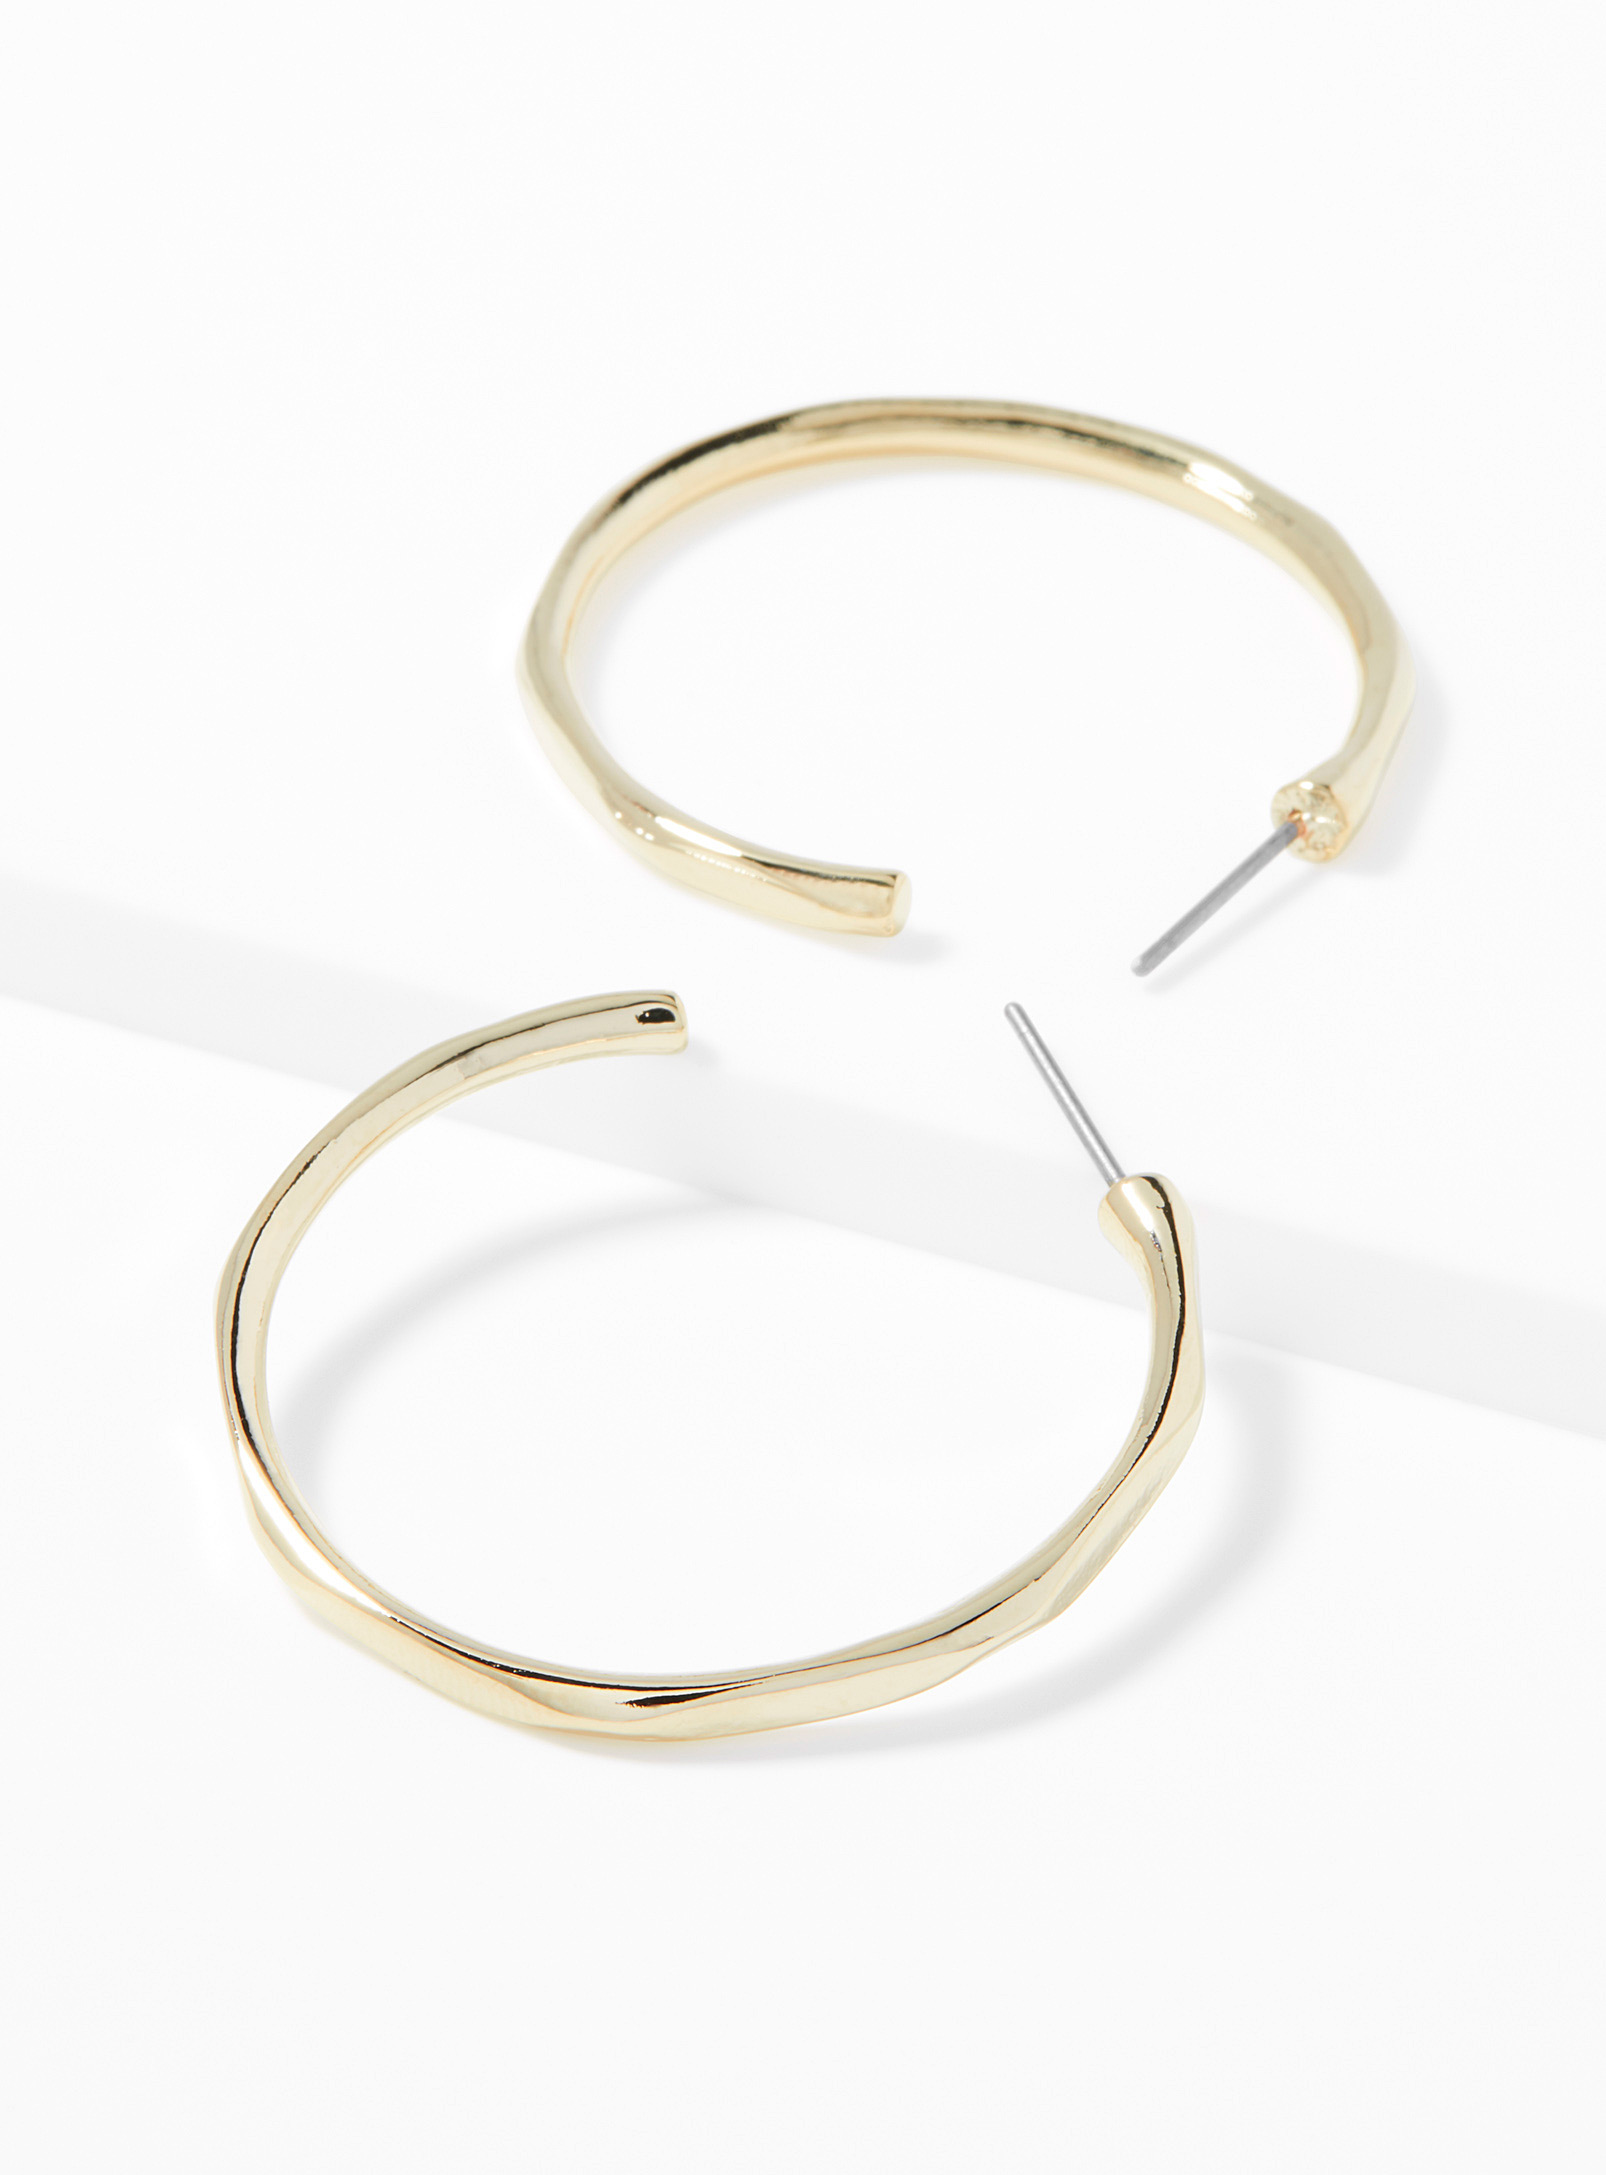 Simons - Women's Gold hammered Hoop Earrings